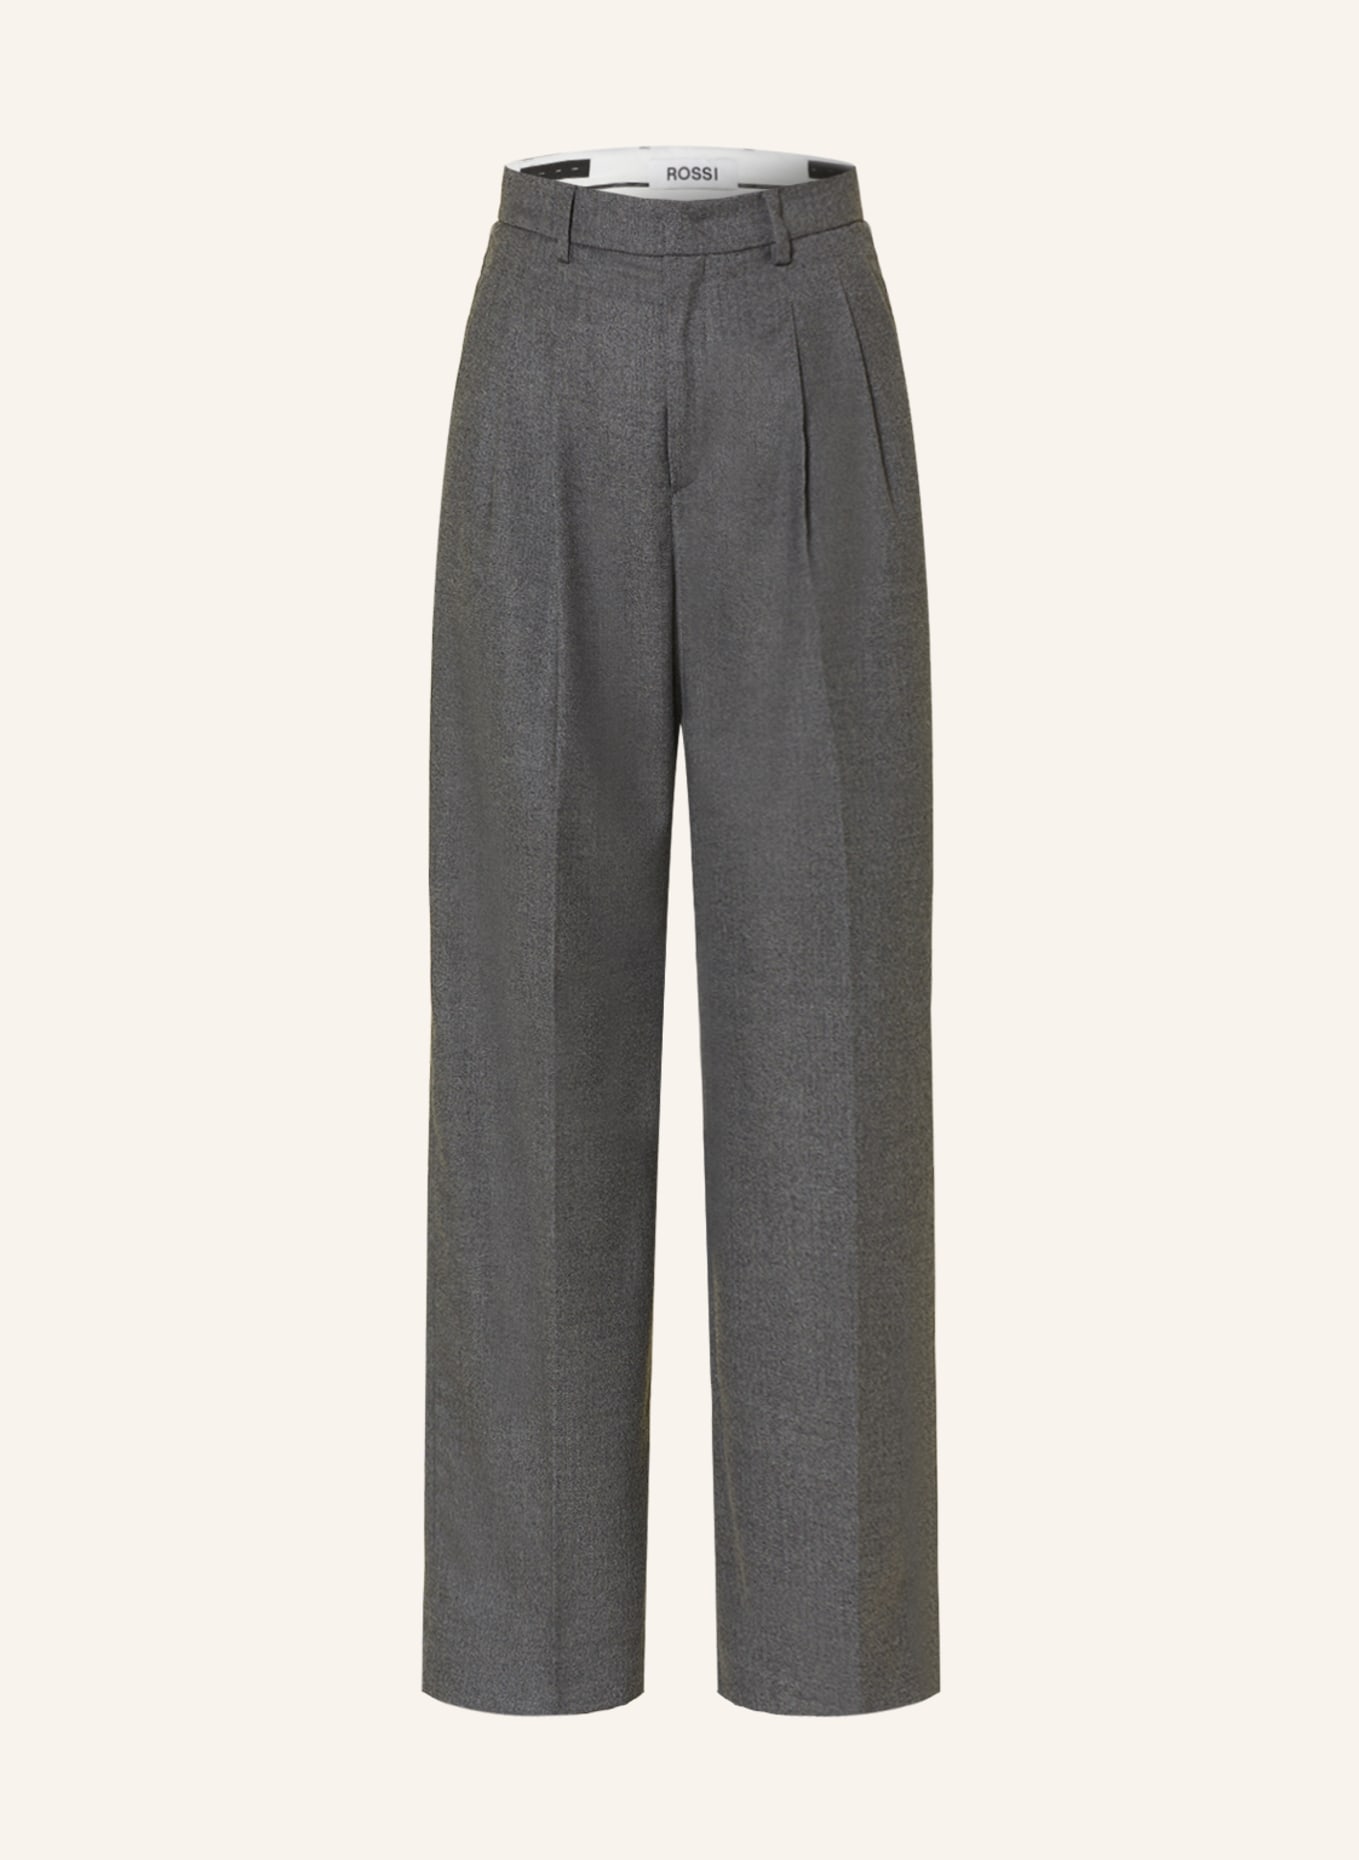 ROSSI Wide leg trousers NOA, Color: DARK GRAY (Image 1)